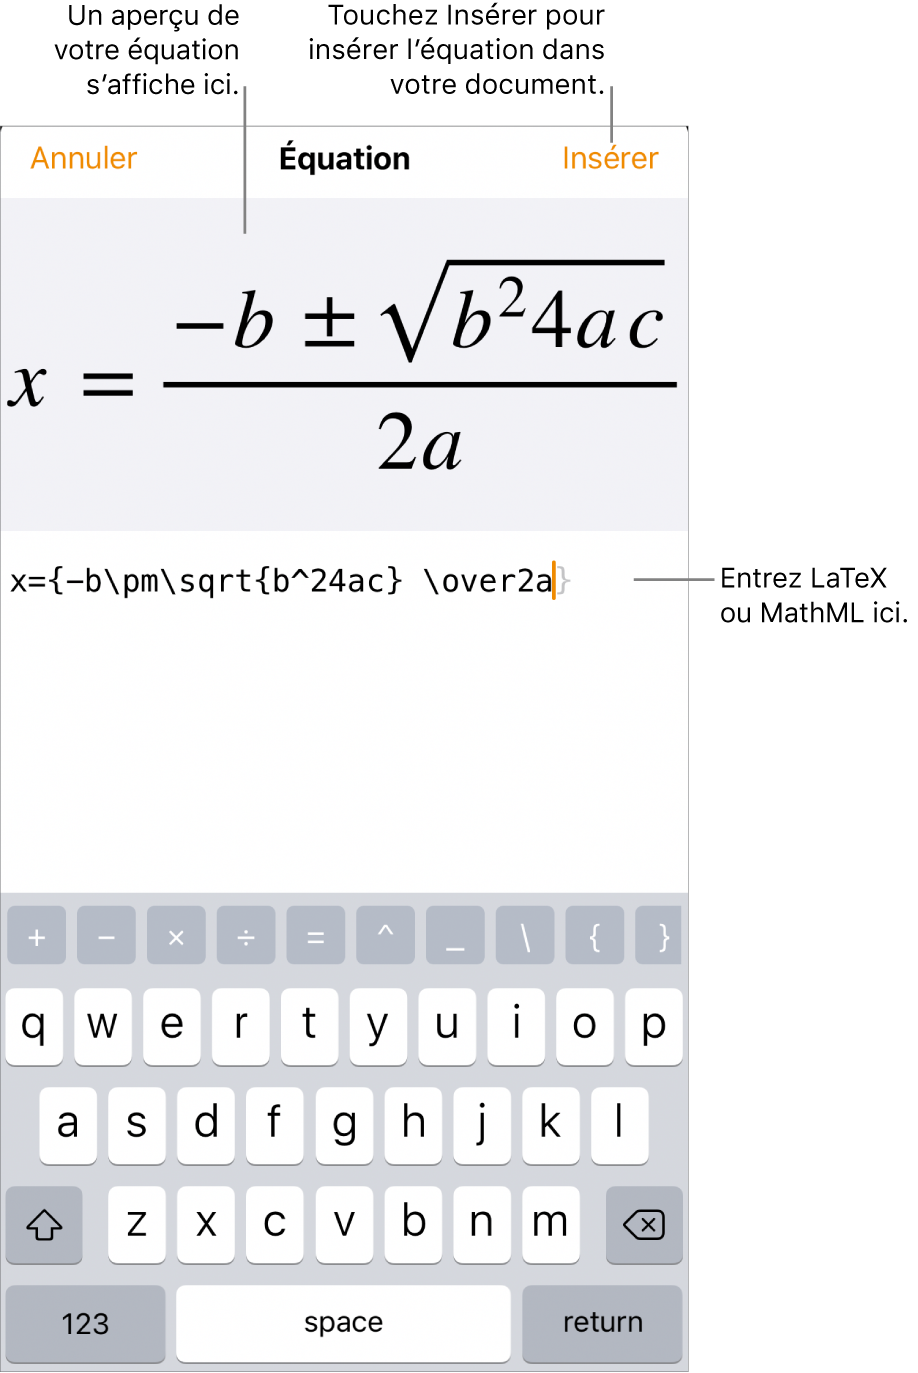 Zone de dialogue Équation, affichant la formule quadratique composée à l’aide des commandes LaTeX et aperçu de la formule au-dessus.